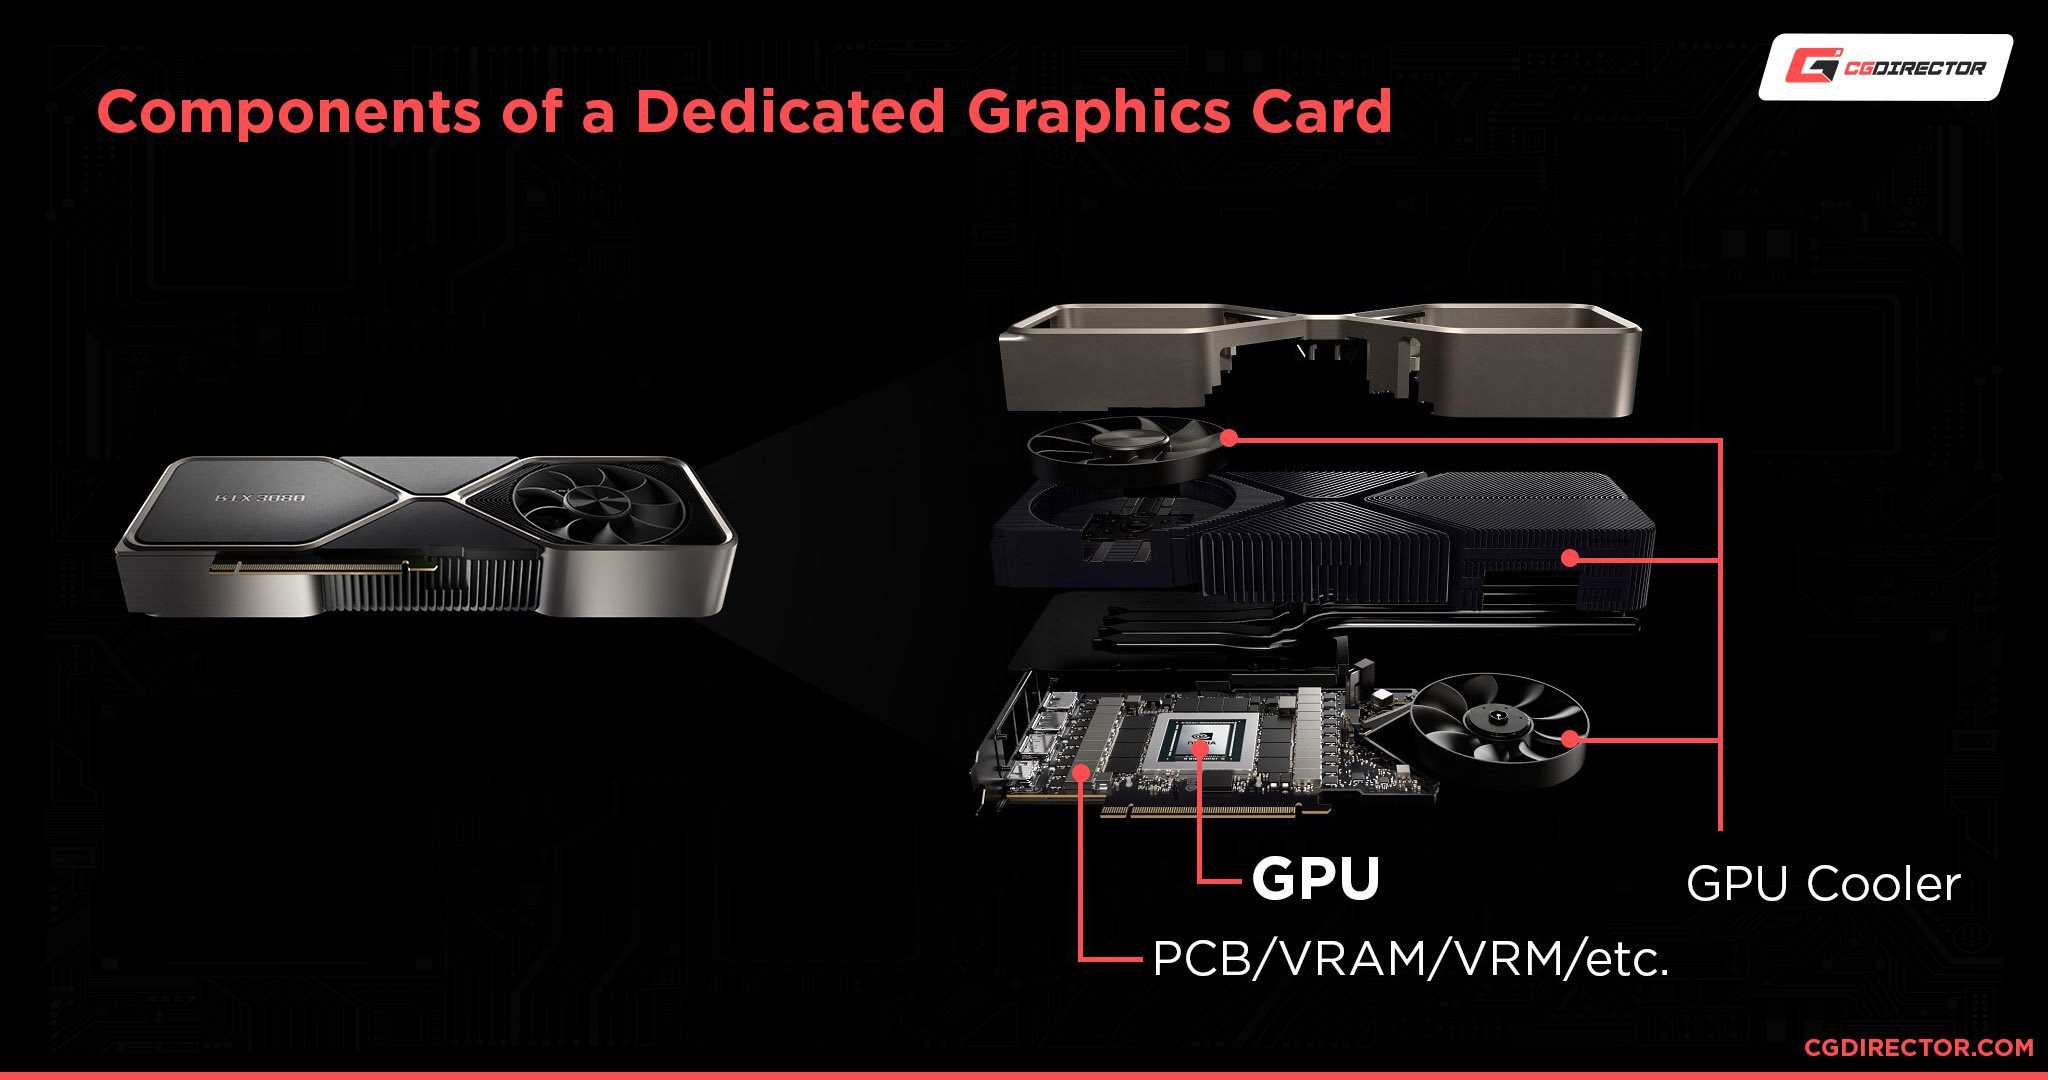 Components of a Dedicated GPU